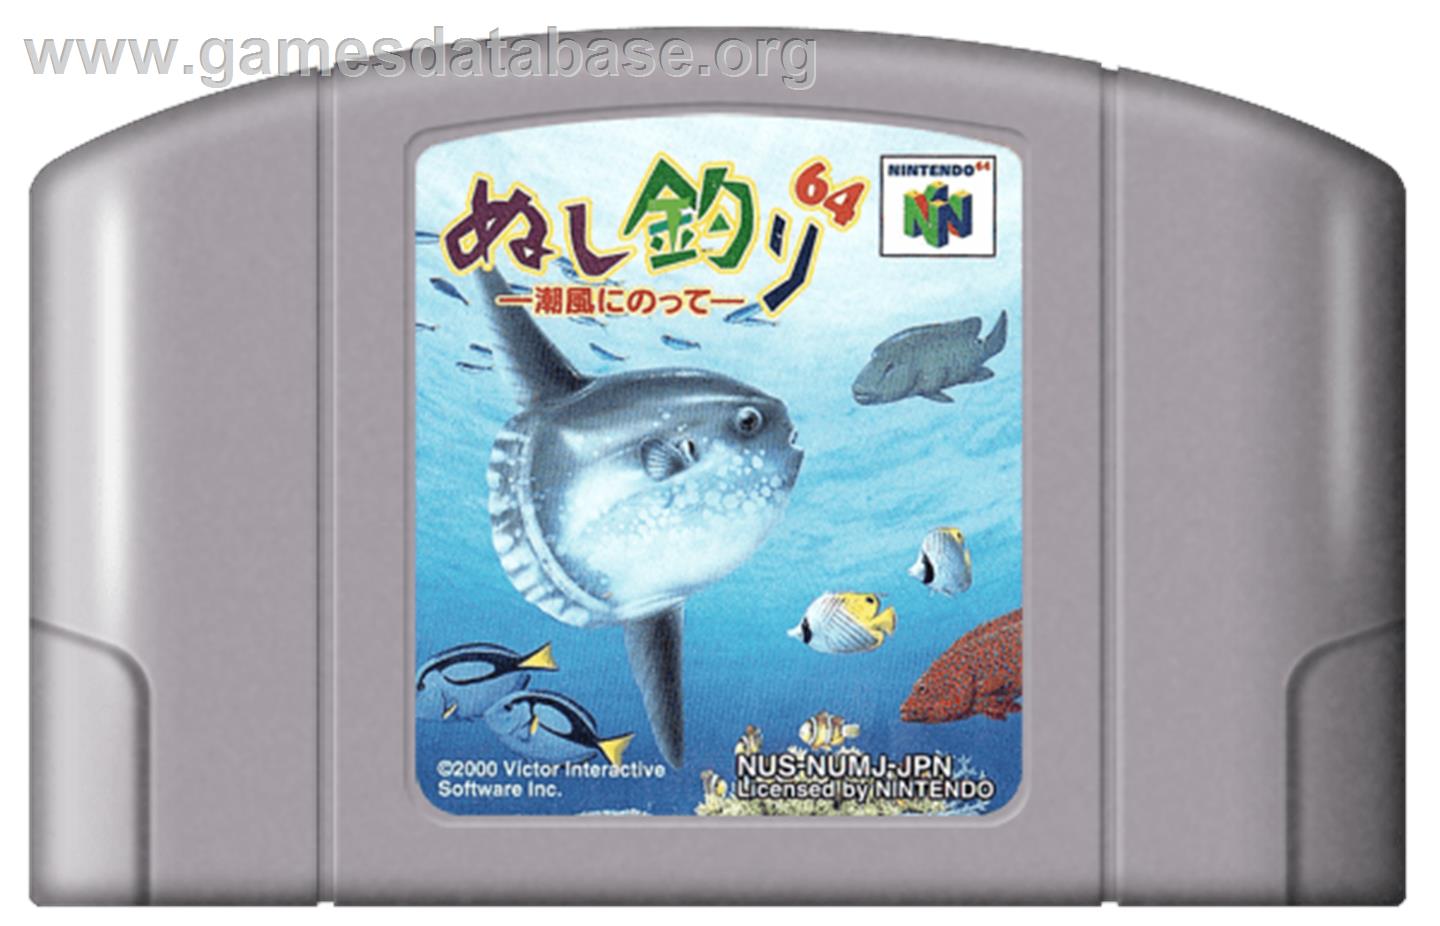 Nushi Tsuri 64: Shiokaze ni Notte - Nintendo N64 - Artwork - Cartridge